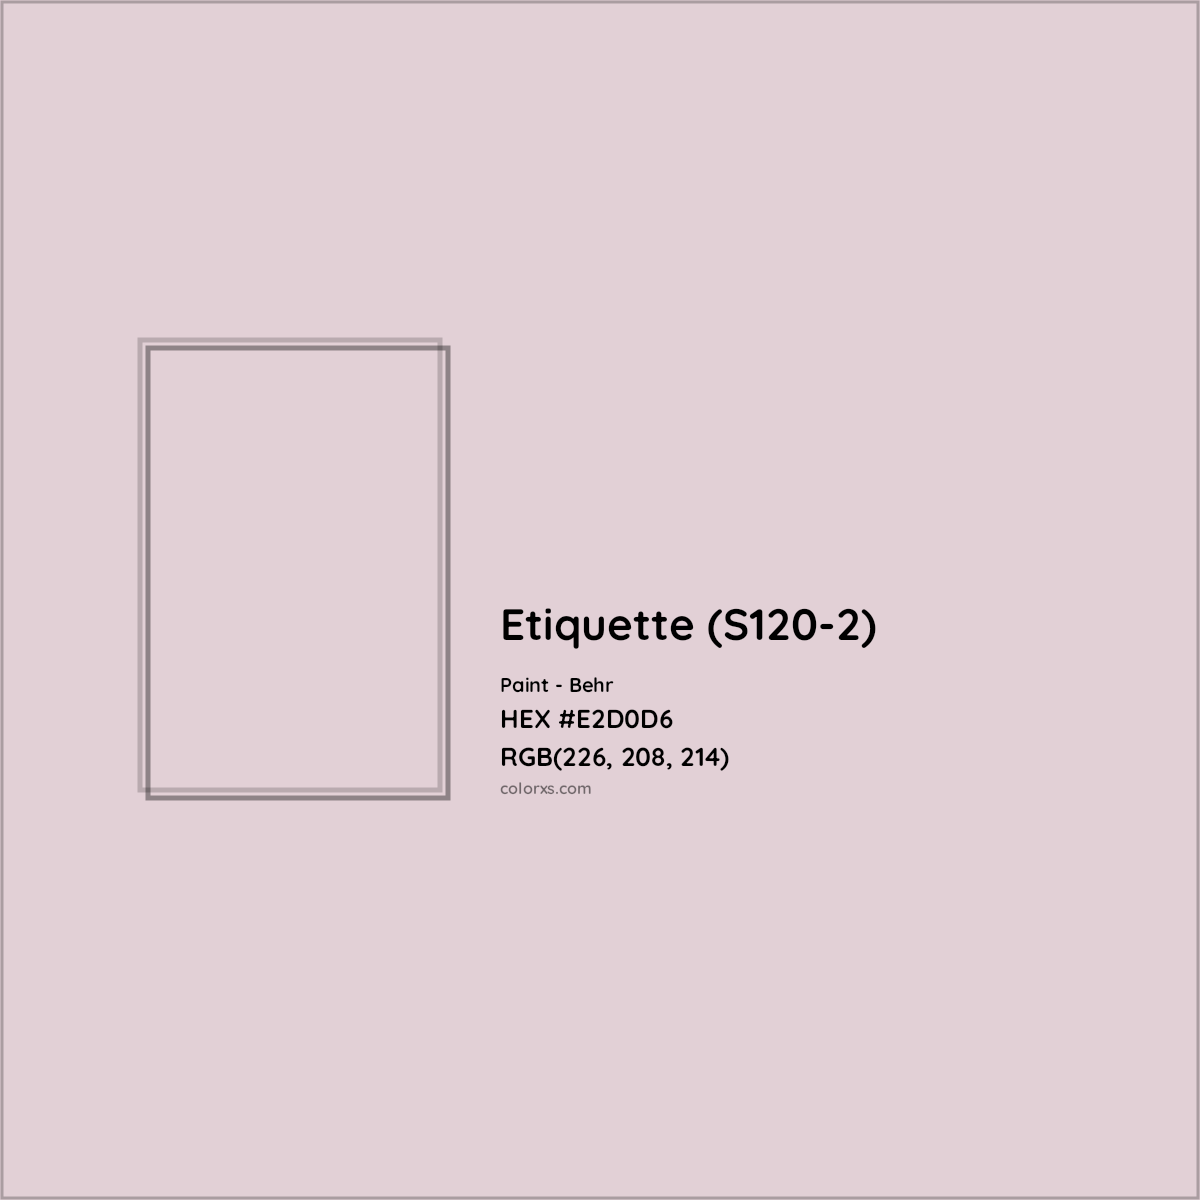 HEX #E2D0D6 Etiquette (S120-2) Paint Behr - Color Code